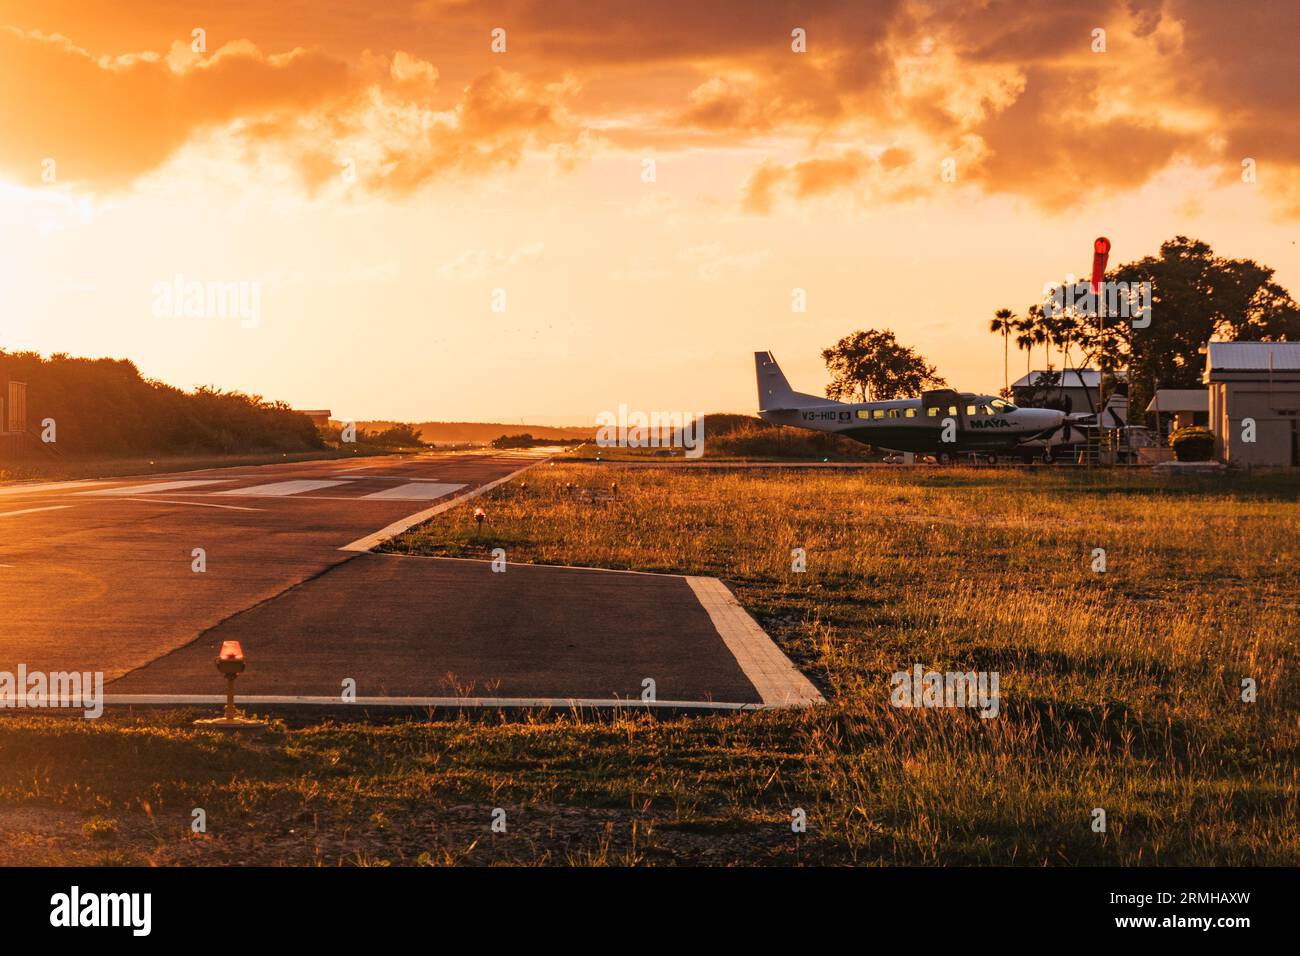 Les couleurs or et orange du coucher du soleil frappent la piste de l'aéroport de Placencia, au sud-est du Belize Banque D'Images